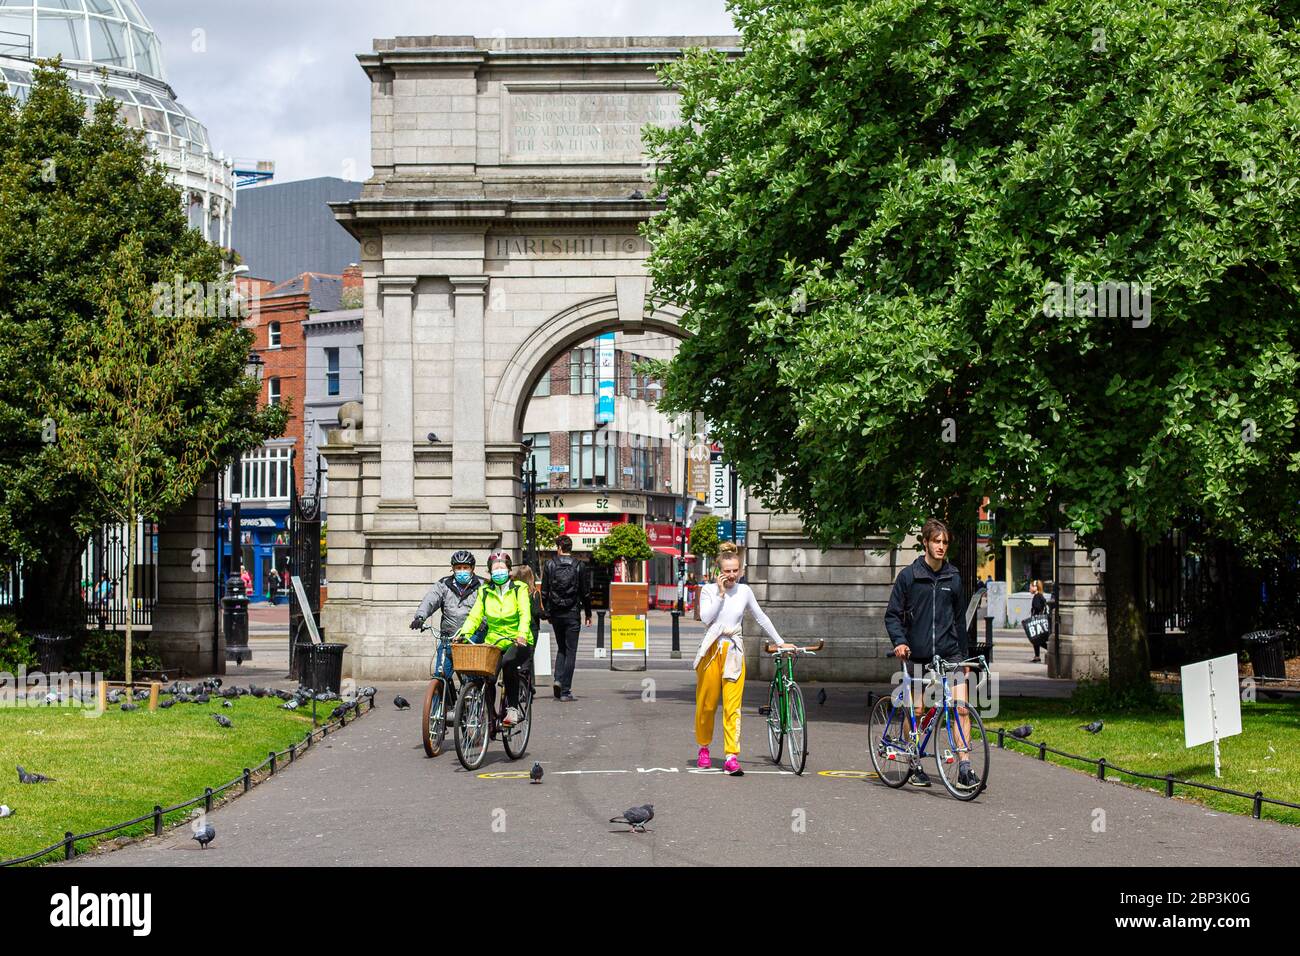 Personen mit Fahrrädern, die Gesichtsmasken tragen, betreten den St.Stephen`s Green Park in Dublin, der während der COVID-19-Pandemie die sozialen Distanzierungsregeln einhält. Stockfoto